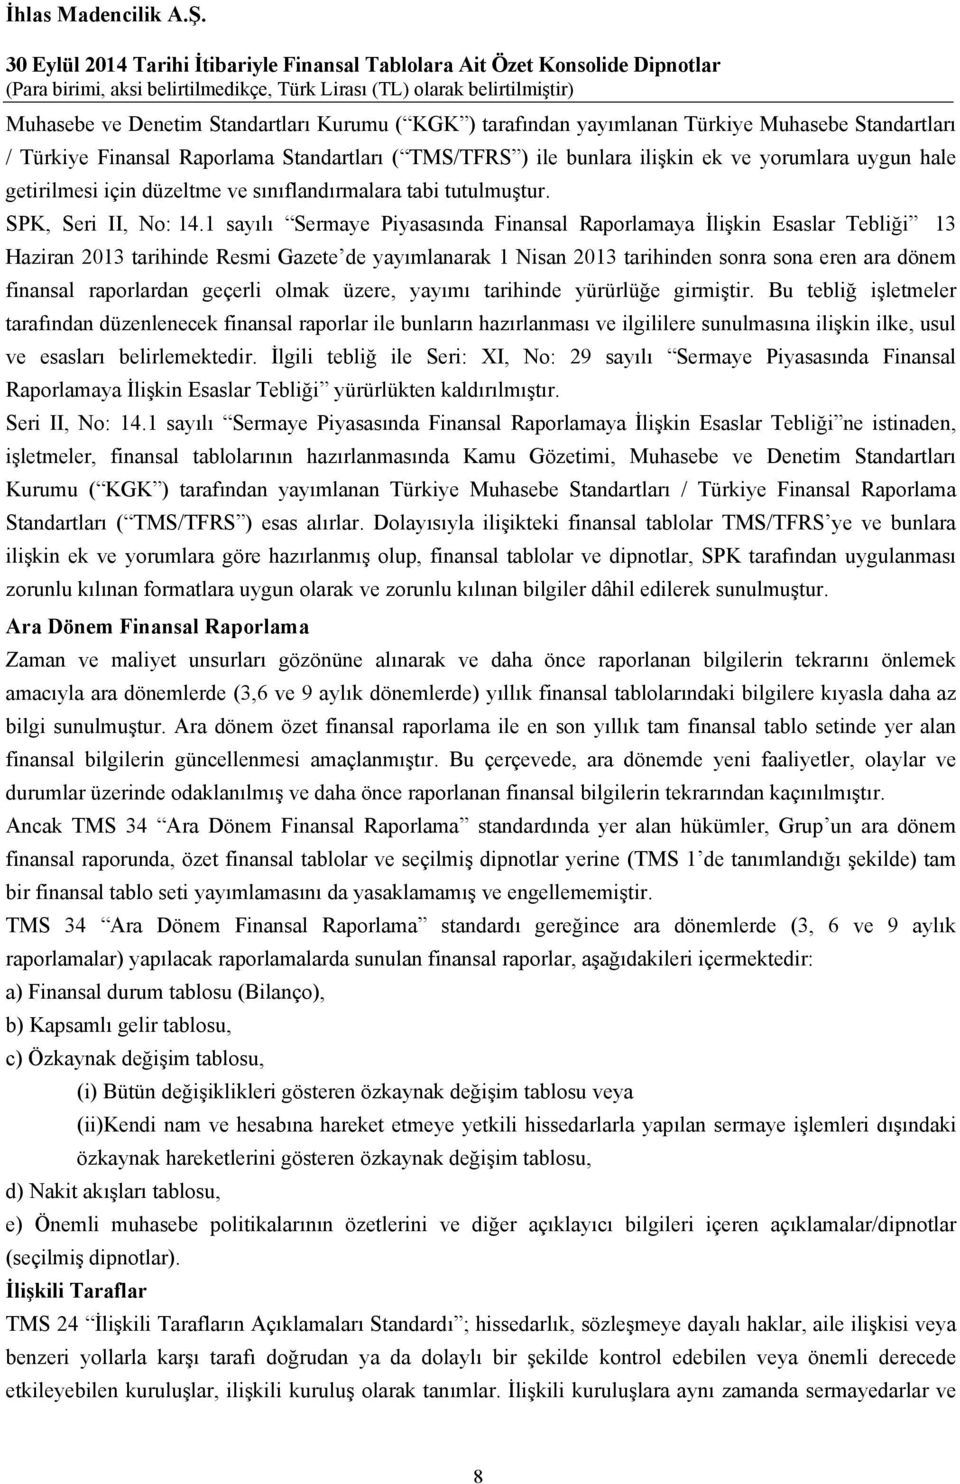 1 sayılı Sermaye Piyasasında Finansal Raporlamaya İlişkin Esaslar Tebliği 13 Haziran 2013 tarihinde Resmi Gazete de yayımlanarak 1 Nisan 2013 tarihinden sonra sona eren ara dönem finansal raporlardan